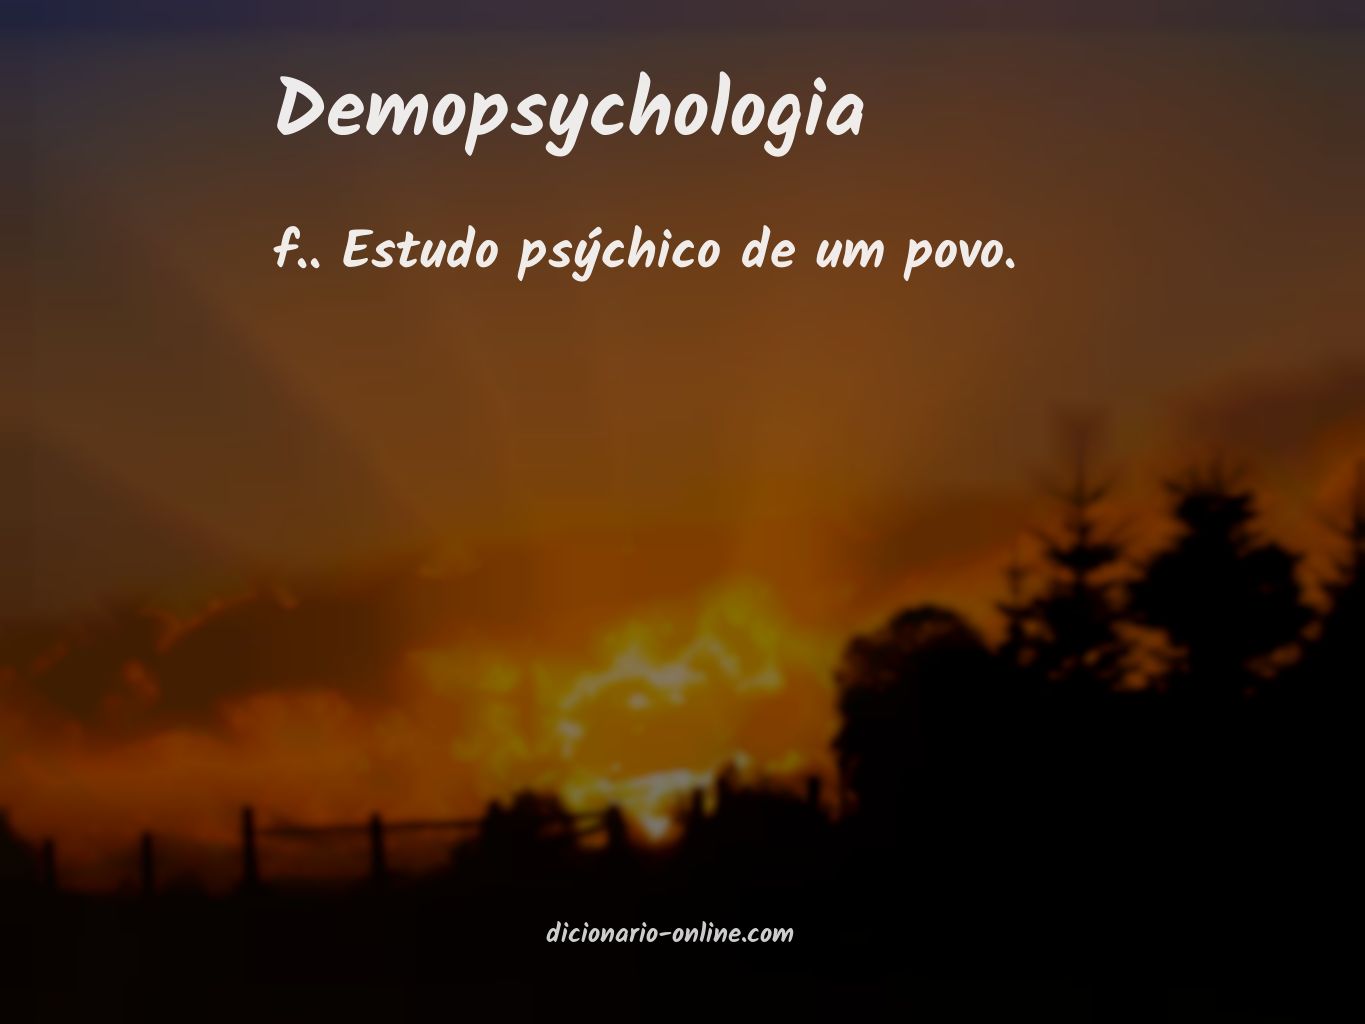 Significado de demopsychologia